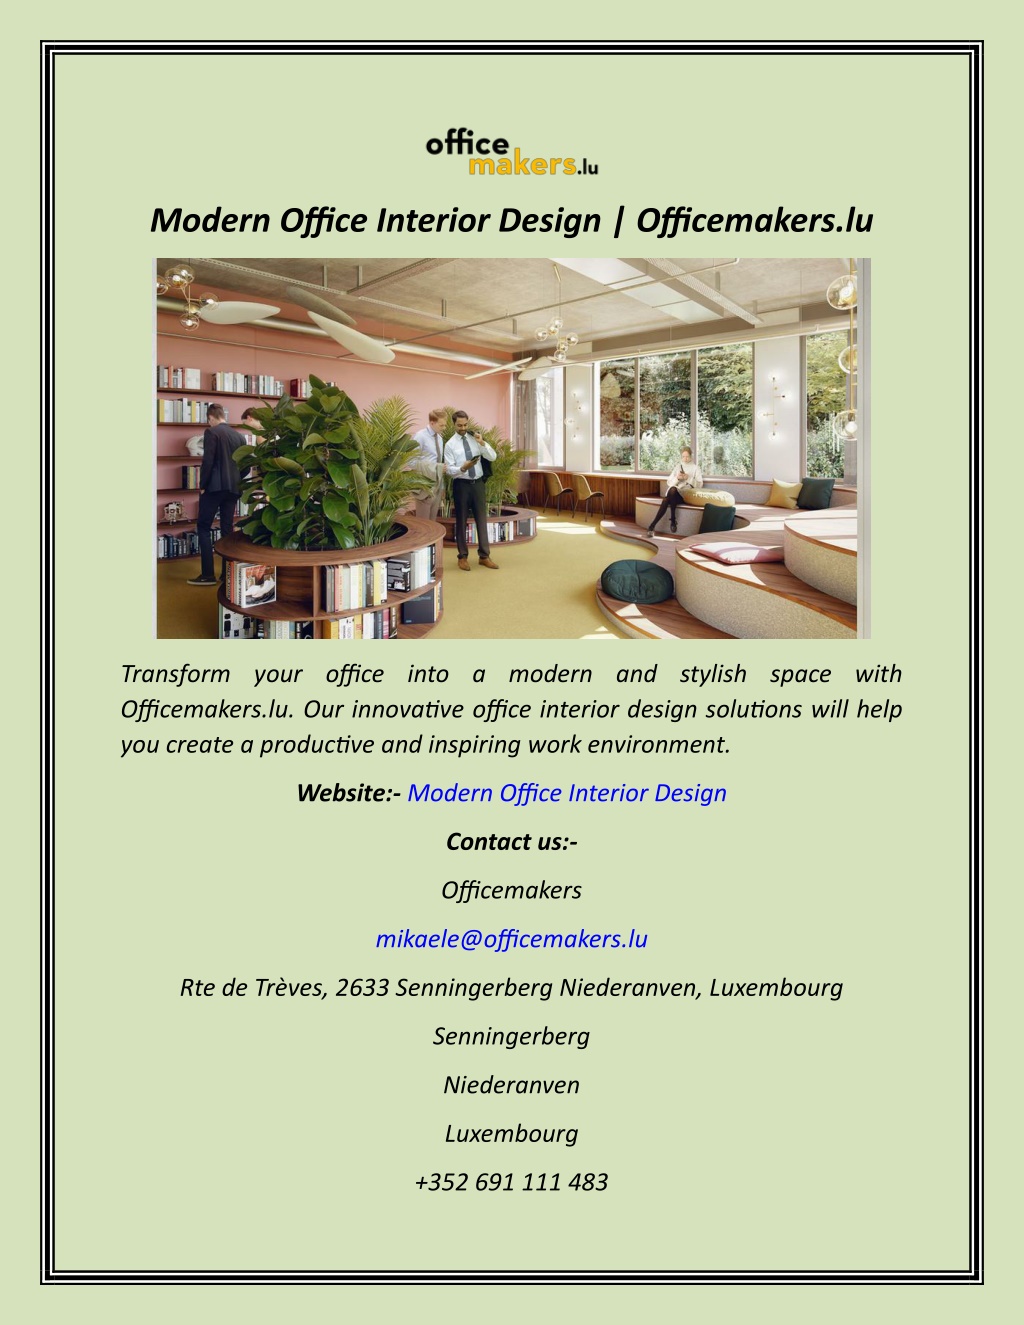 https://image7.slideserve.com/12528739/modern-office-interior-design-officemakers-lu-l.jpg